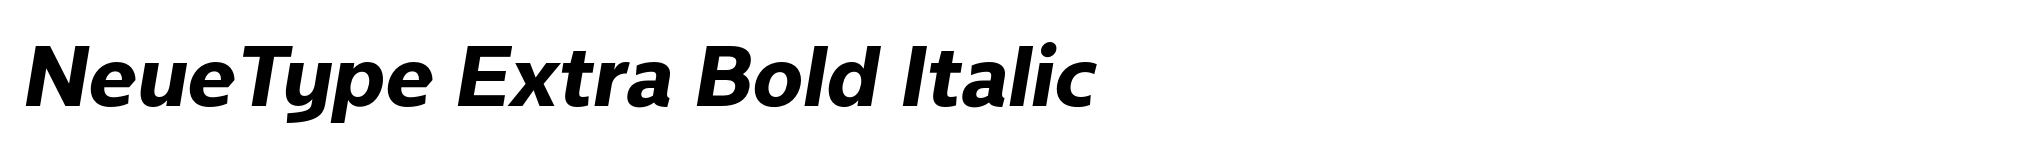 NeueType Extra Bold Italic image